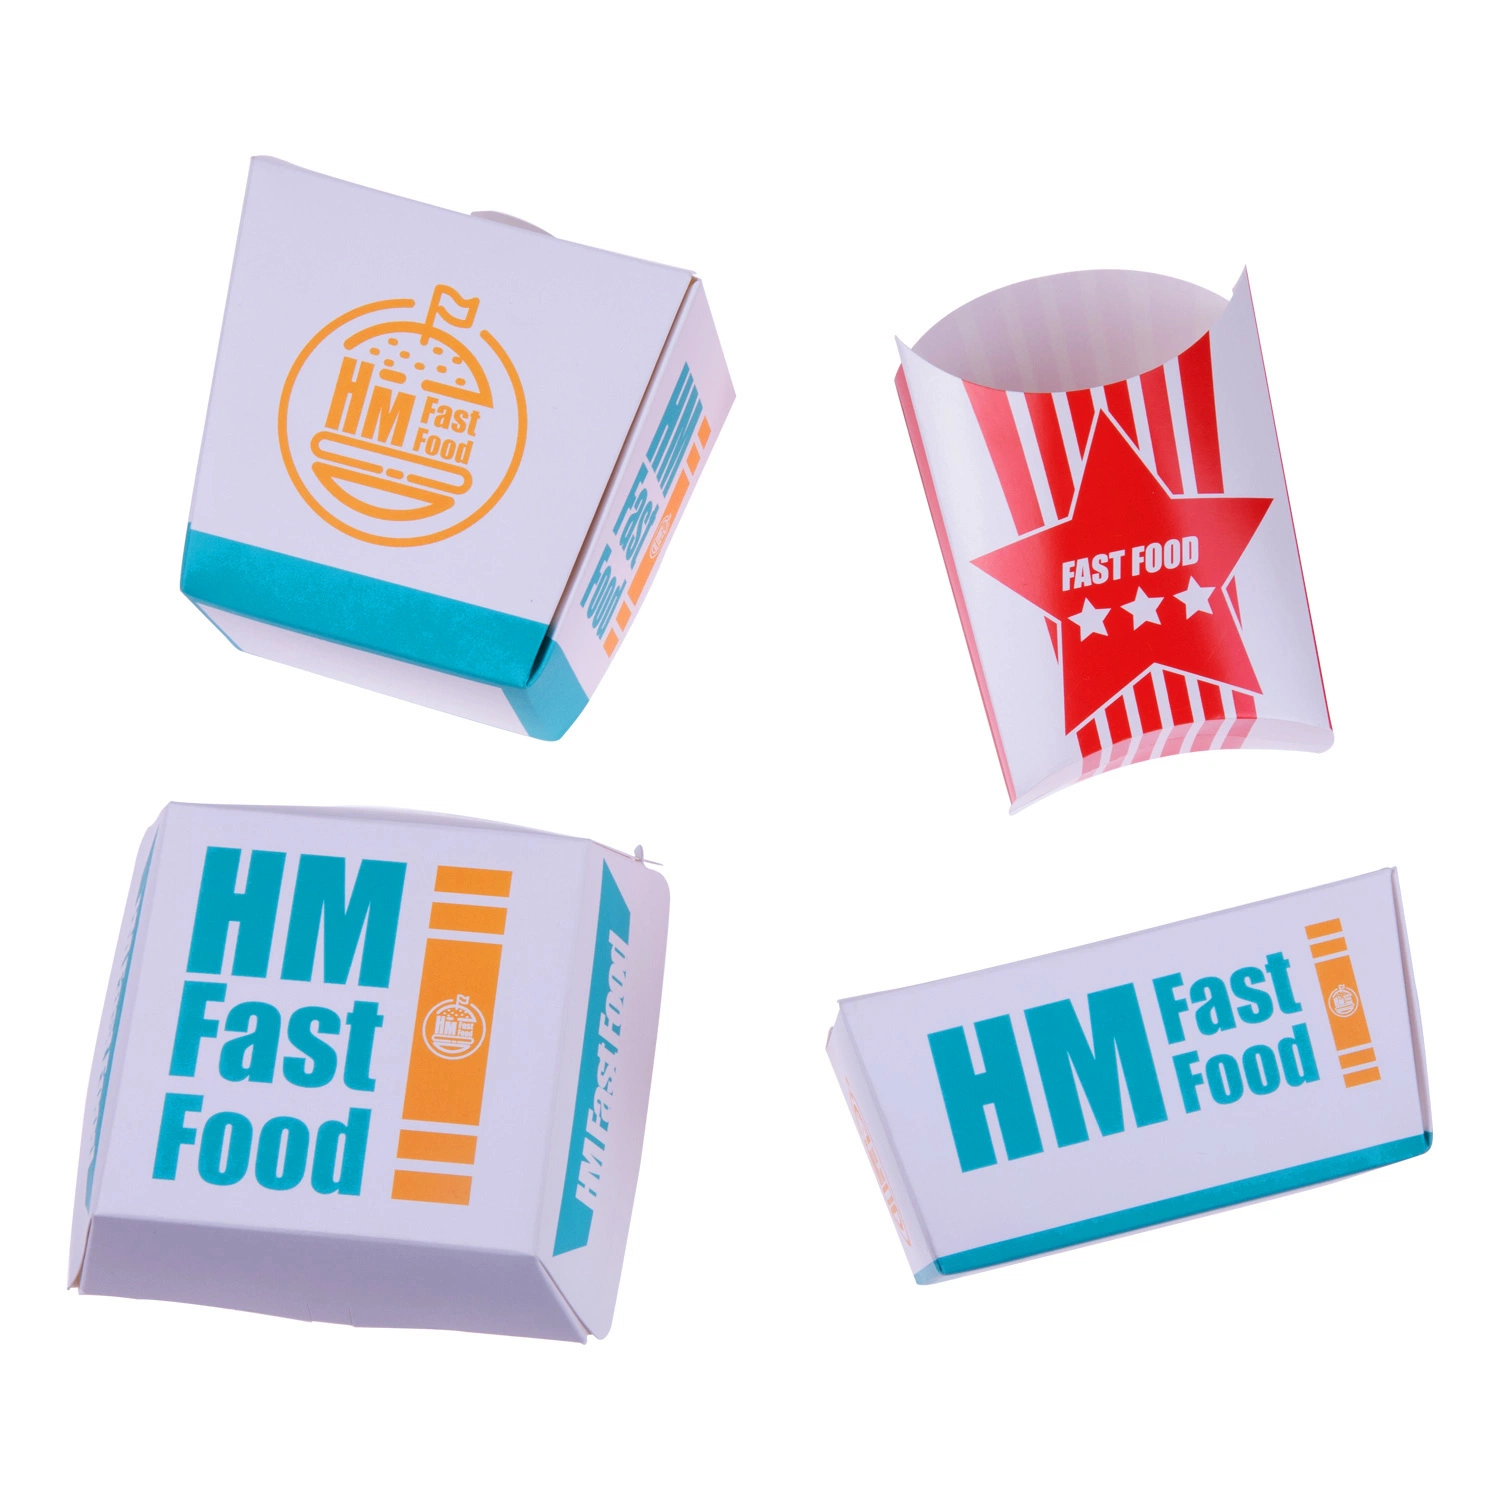 La vente au détail d'excellente qualité sur mesure Personnalisée Emballage Emballage papier alimentaire Fast Emballage boîte Pizza Burger Box